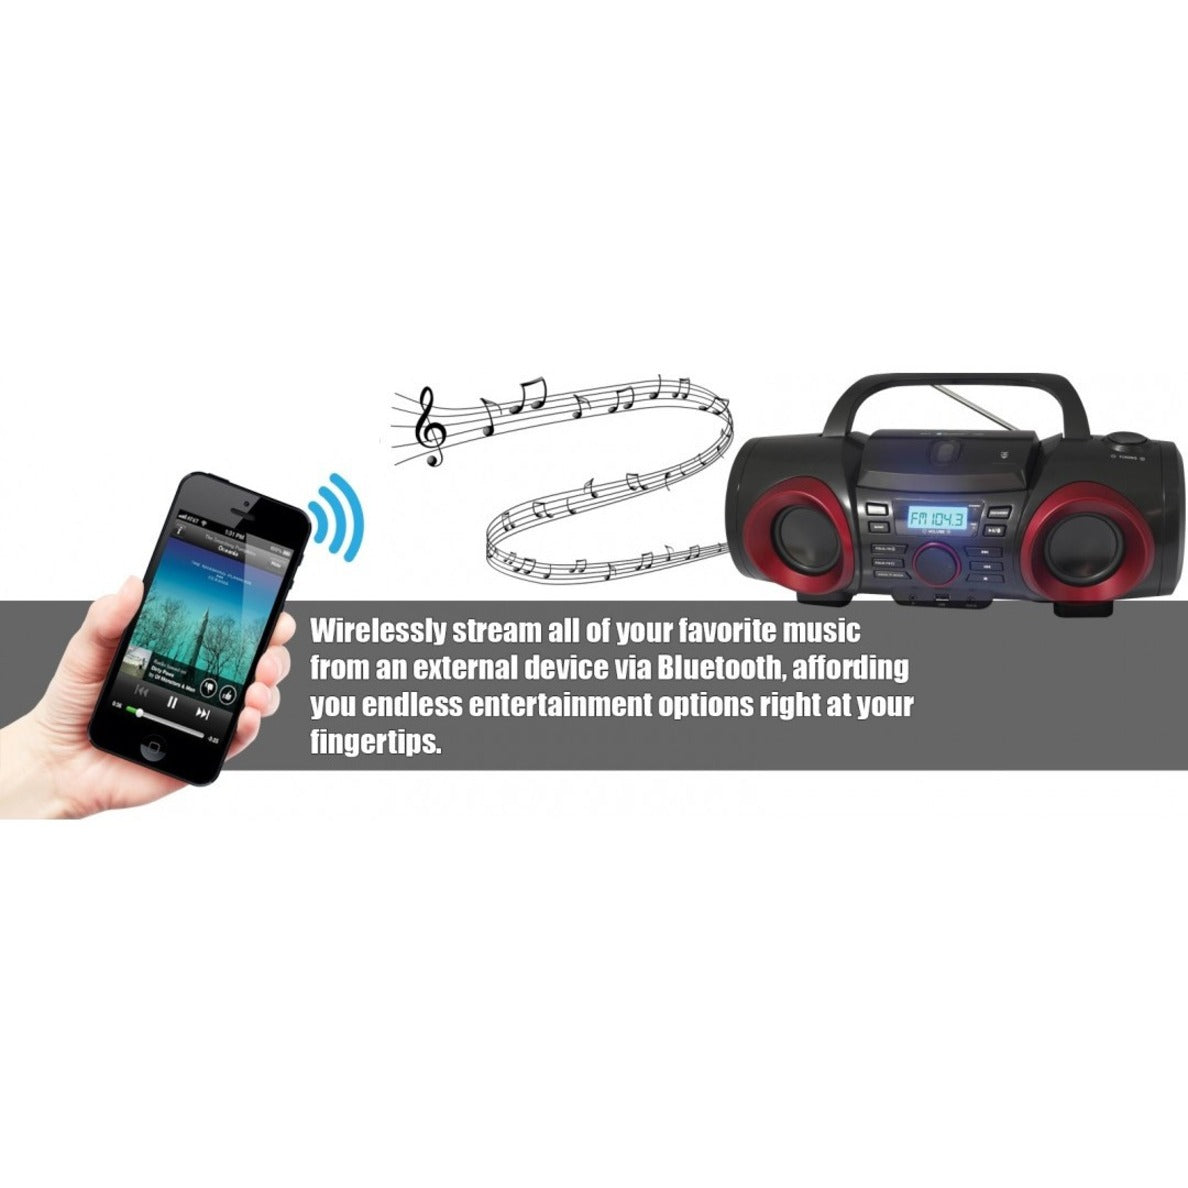 Naxa NPB267 MP3/CD Boombox mit Bluetooth Tragbarer Radio/CD-Player BoomBox